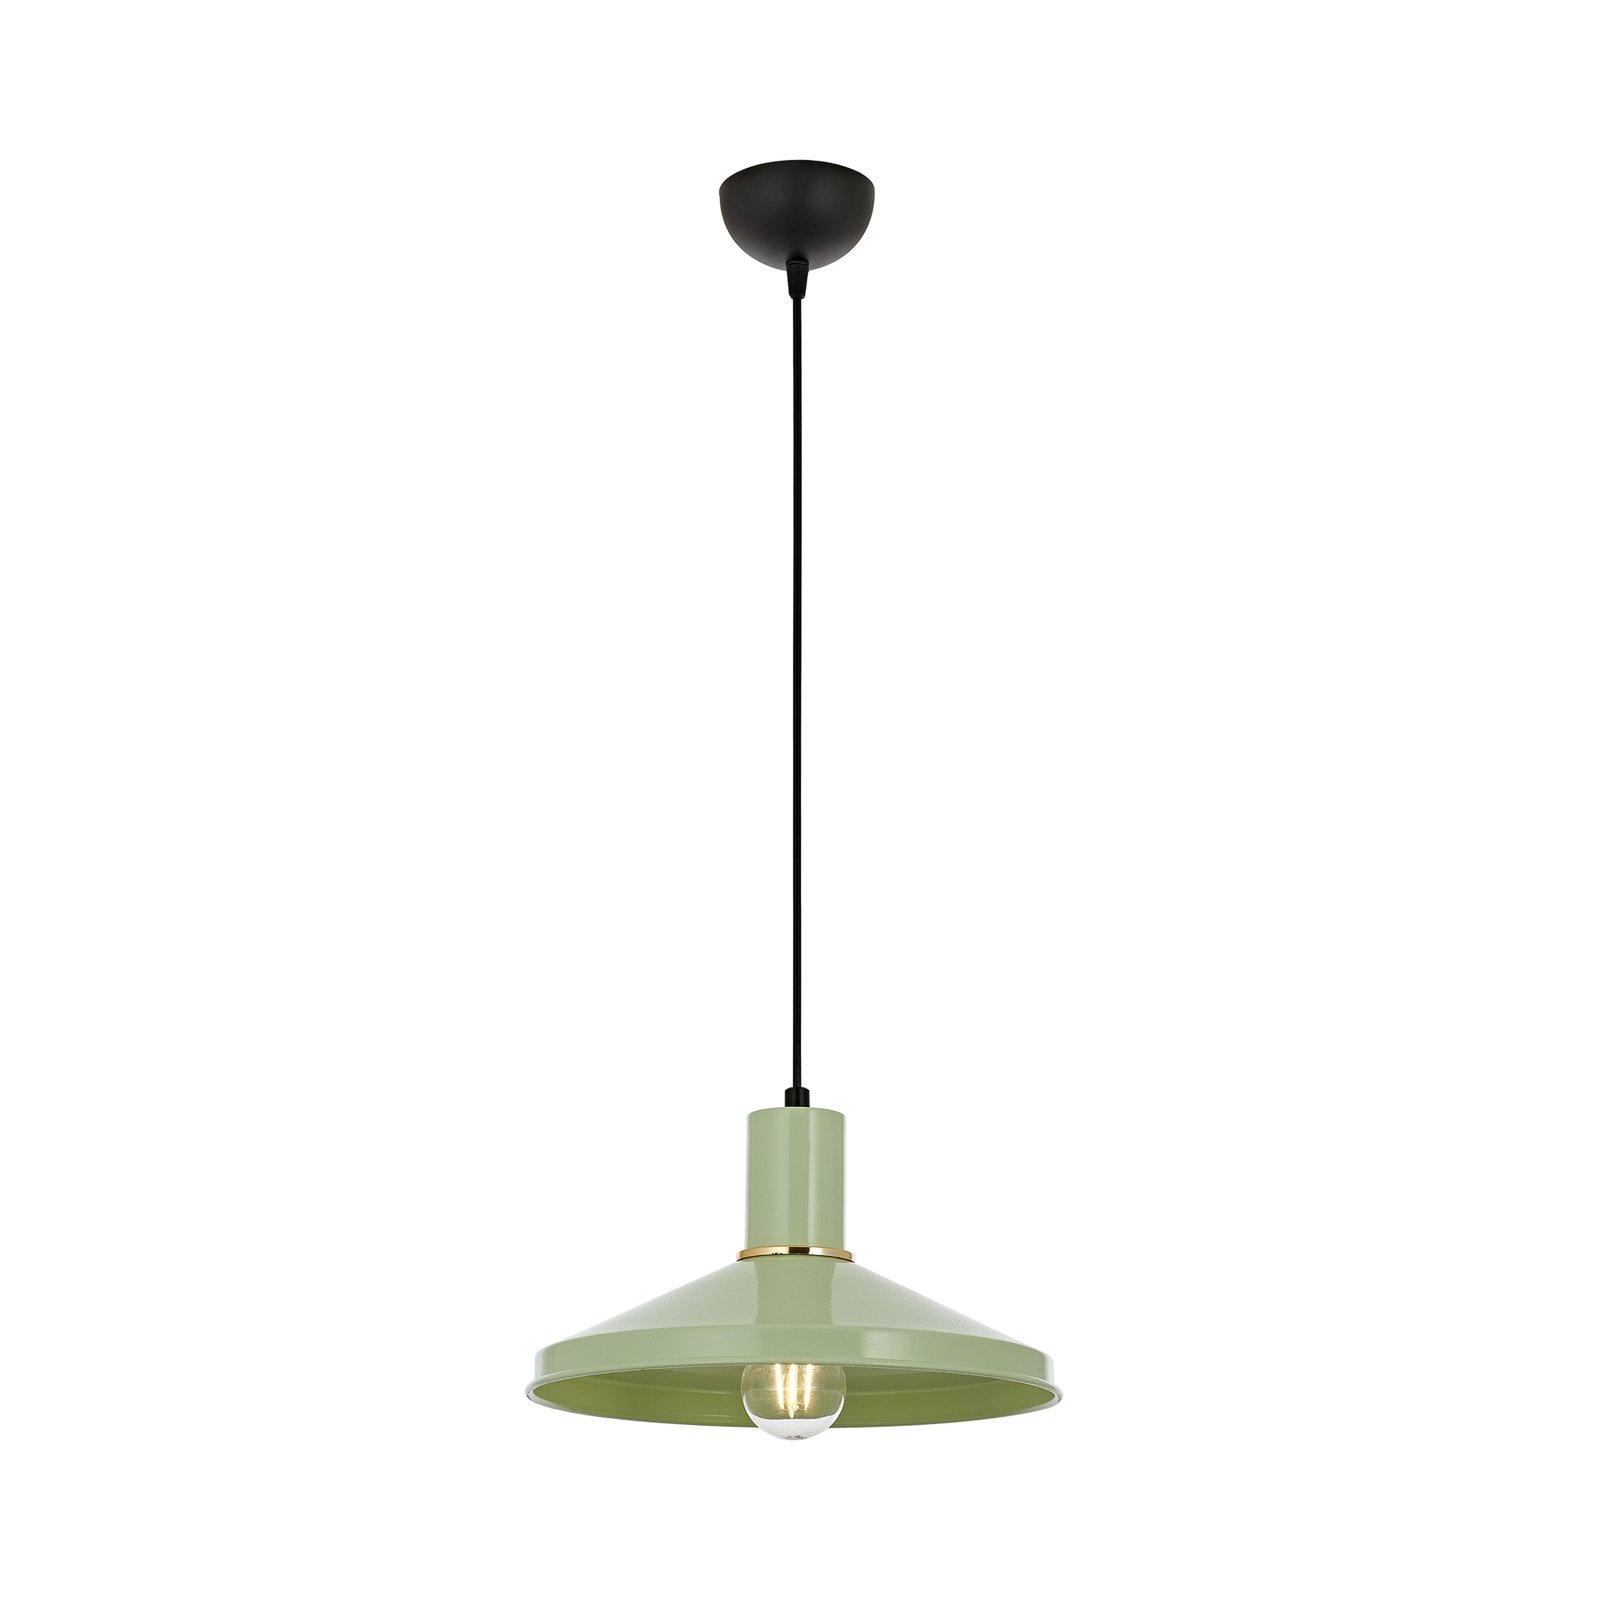 Hanglamp AV-4106-M24-GREEN van metaal, groen